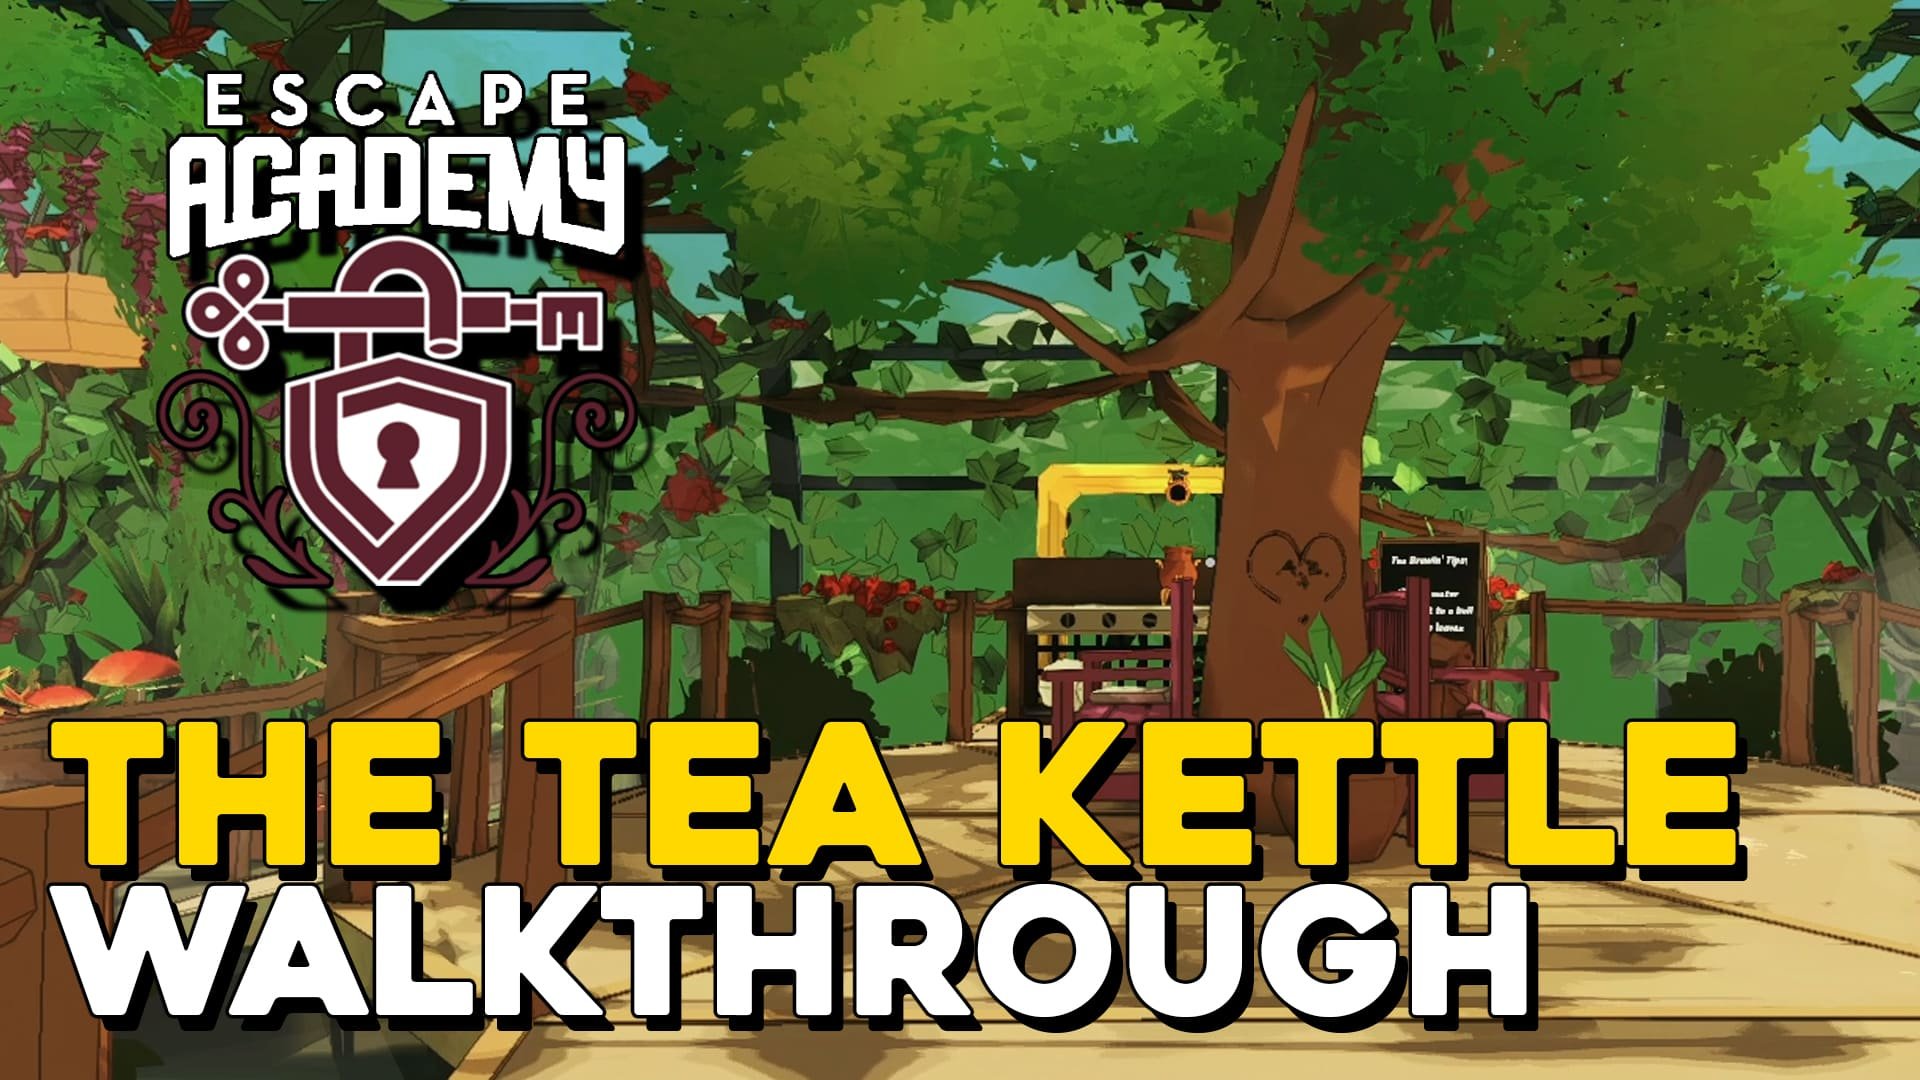 Escape Academy The Tea Kettle Walkthrough (copia)